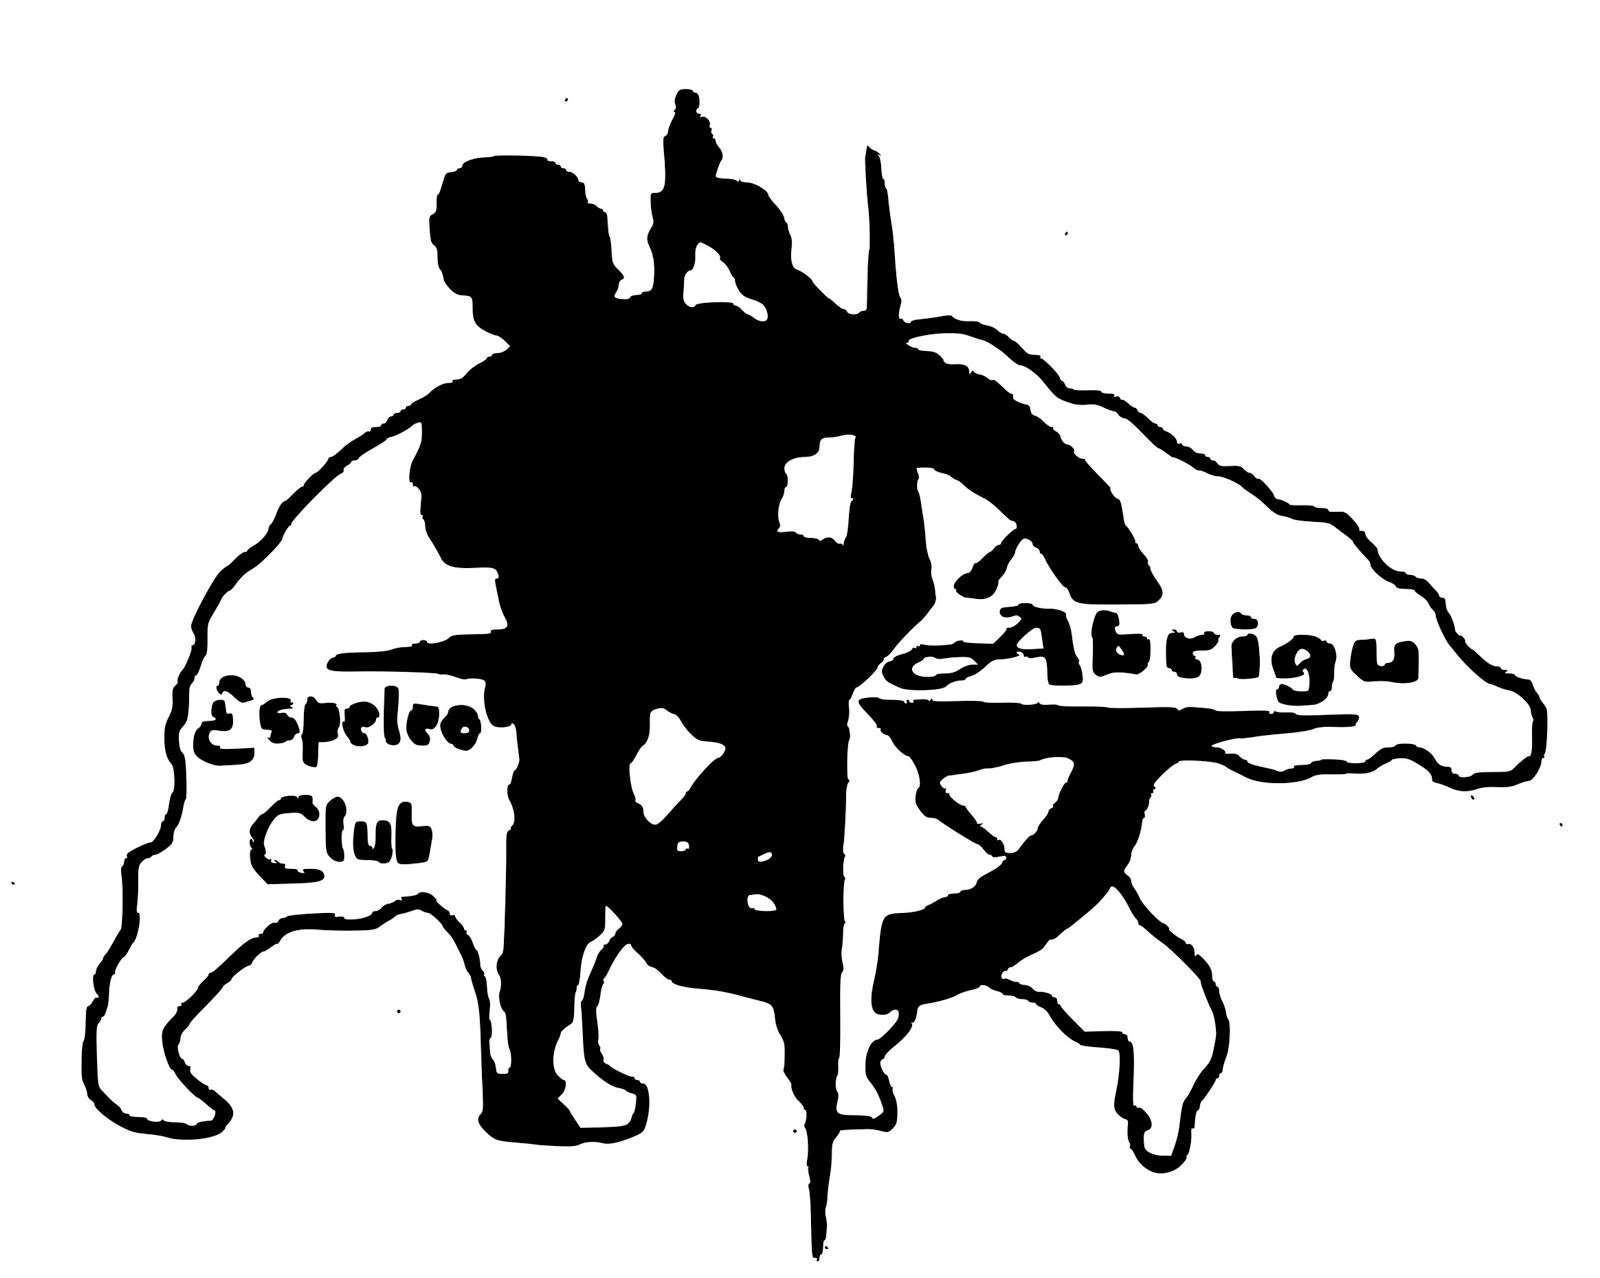 ESPELEO CLUB ÁBRIGU